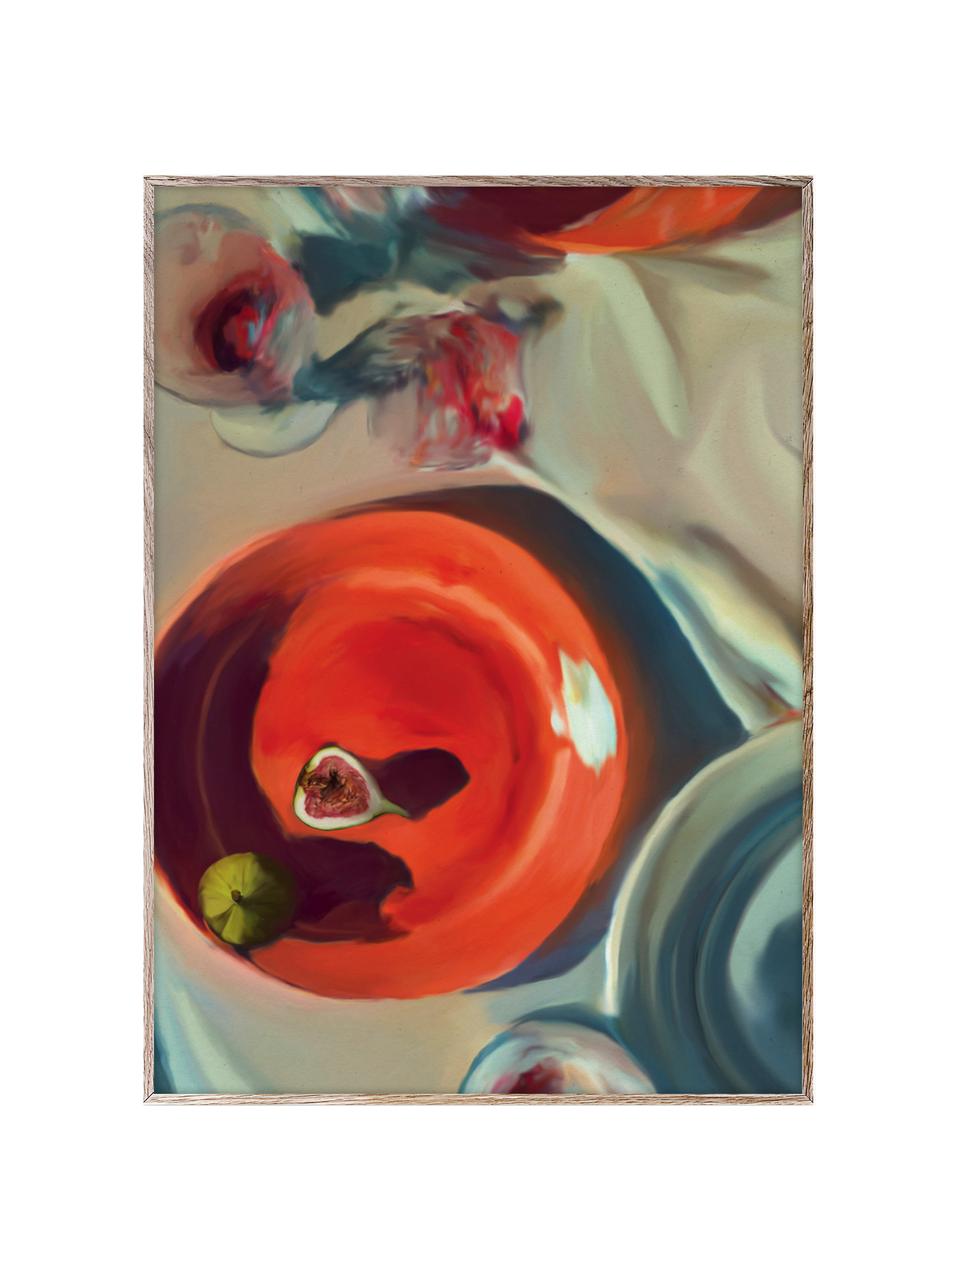 Plakát Fine Dining, 210g matný papír Hahnemühle, digitální tisk s 10 barvami odolnými vůči UV záření, Korálově červená, greige, Š 30 cm, V 40 cm